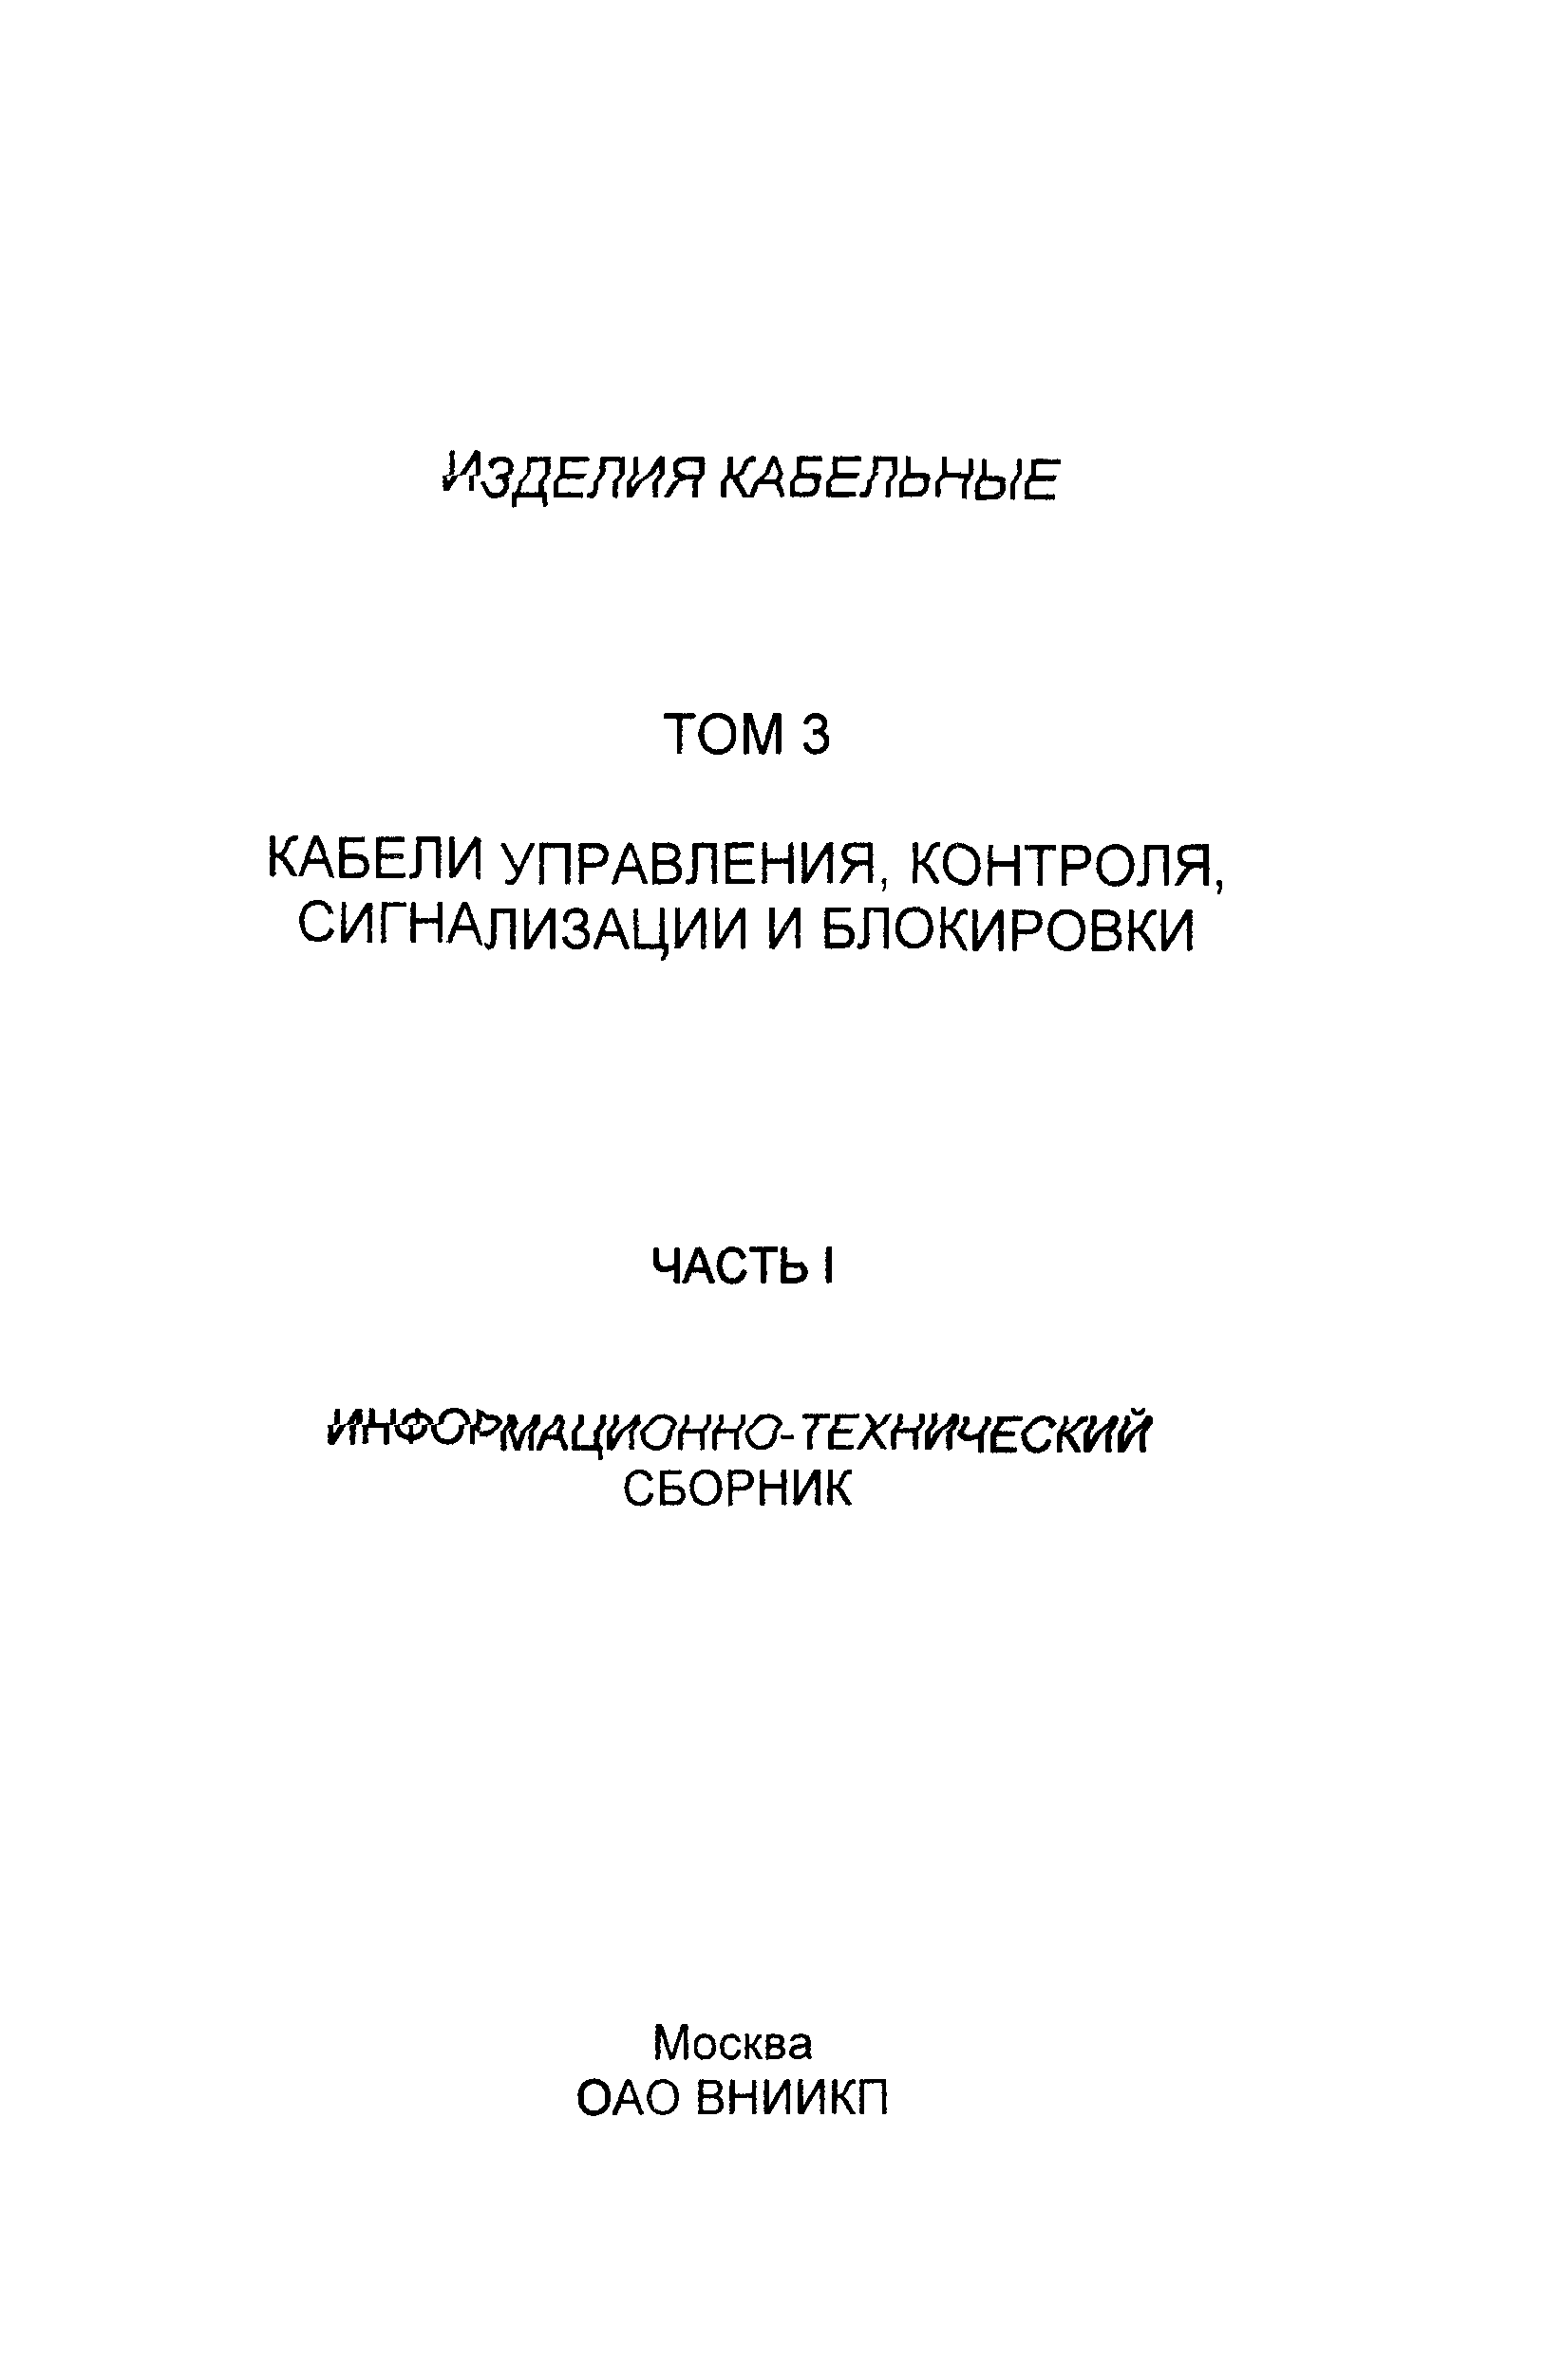 Информационно-технический сборник том 3